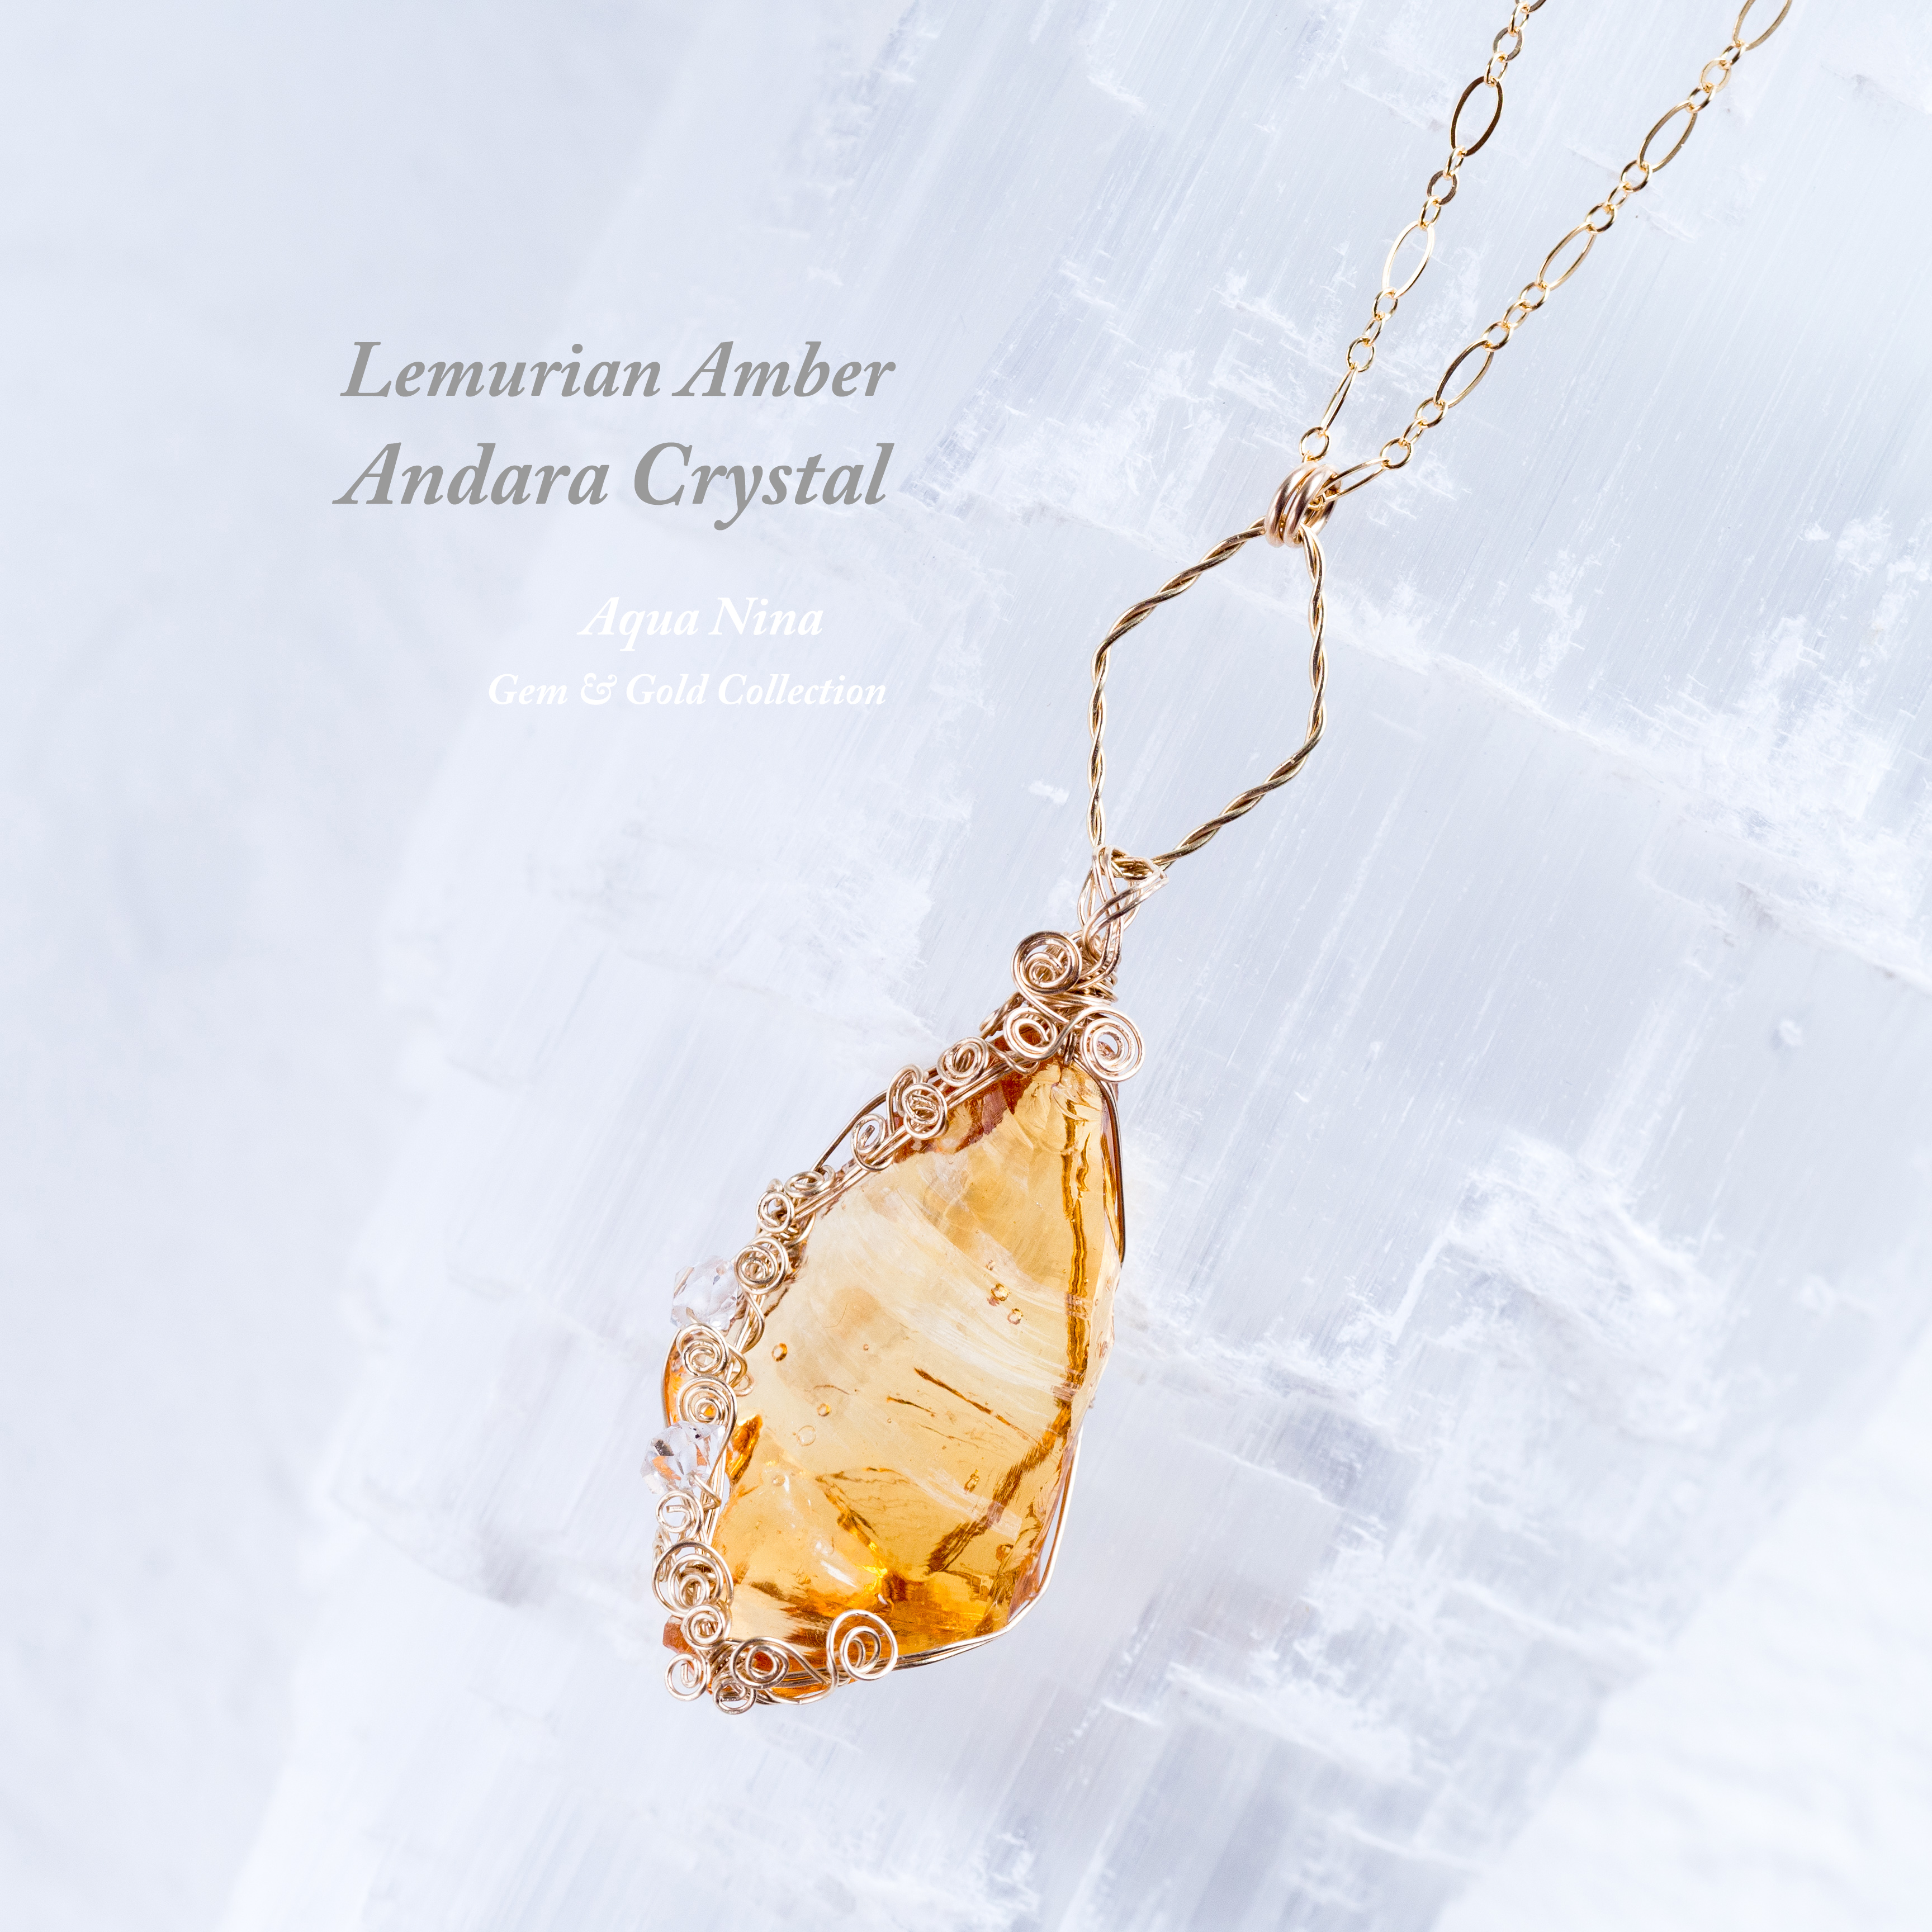 【アンダラクリスタル】Lemurian Amber Andara Crystal ♡寅年寅月寅日・獅子座満月特別制作♡